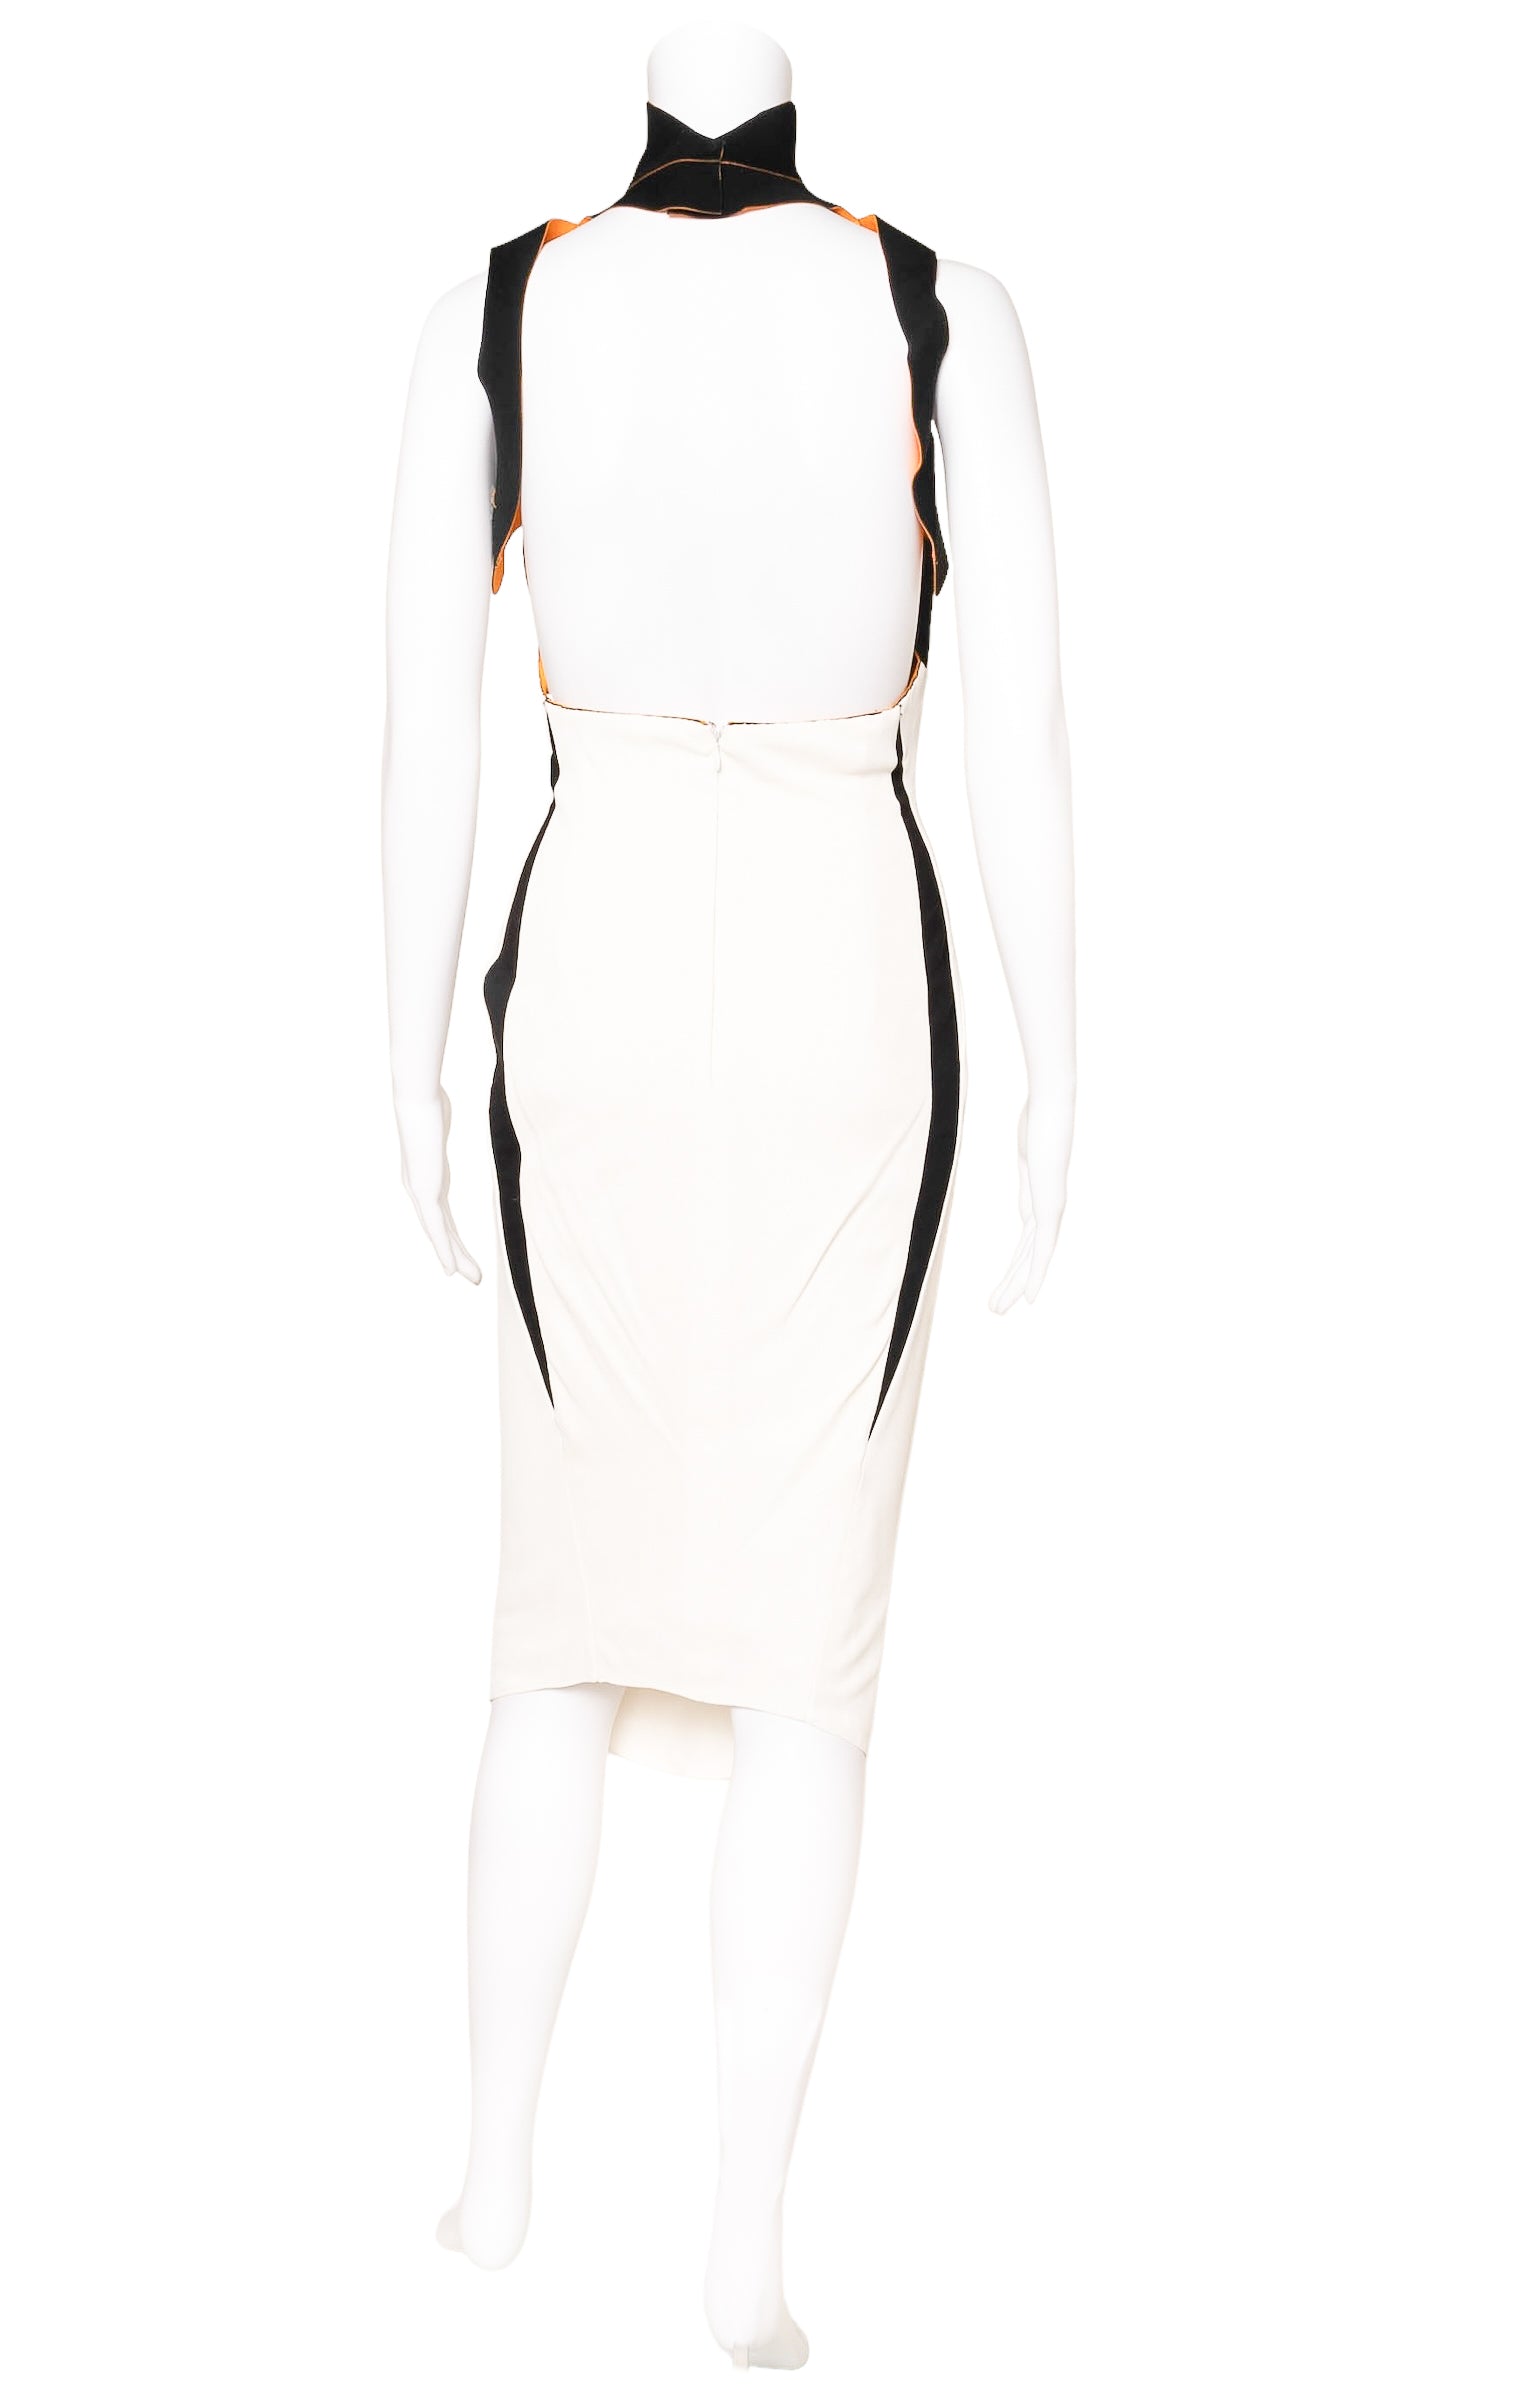 MUGLER (RARE) Dress Size: No size tags, fits like US 4-6 – Kardashian Kloset